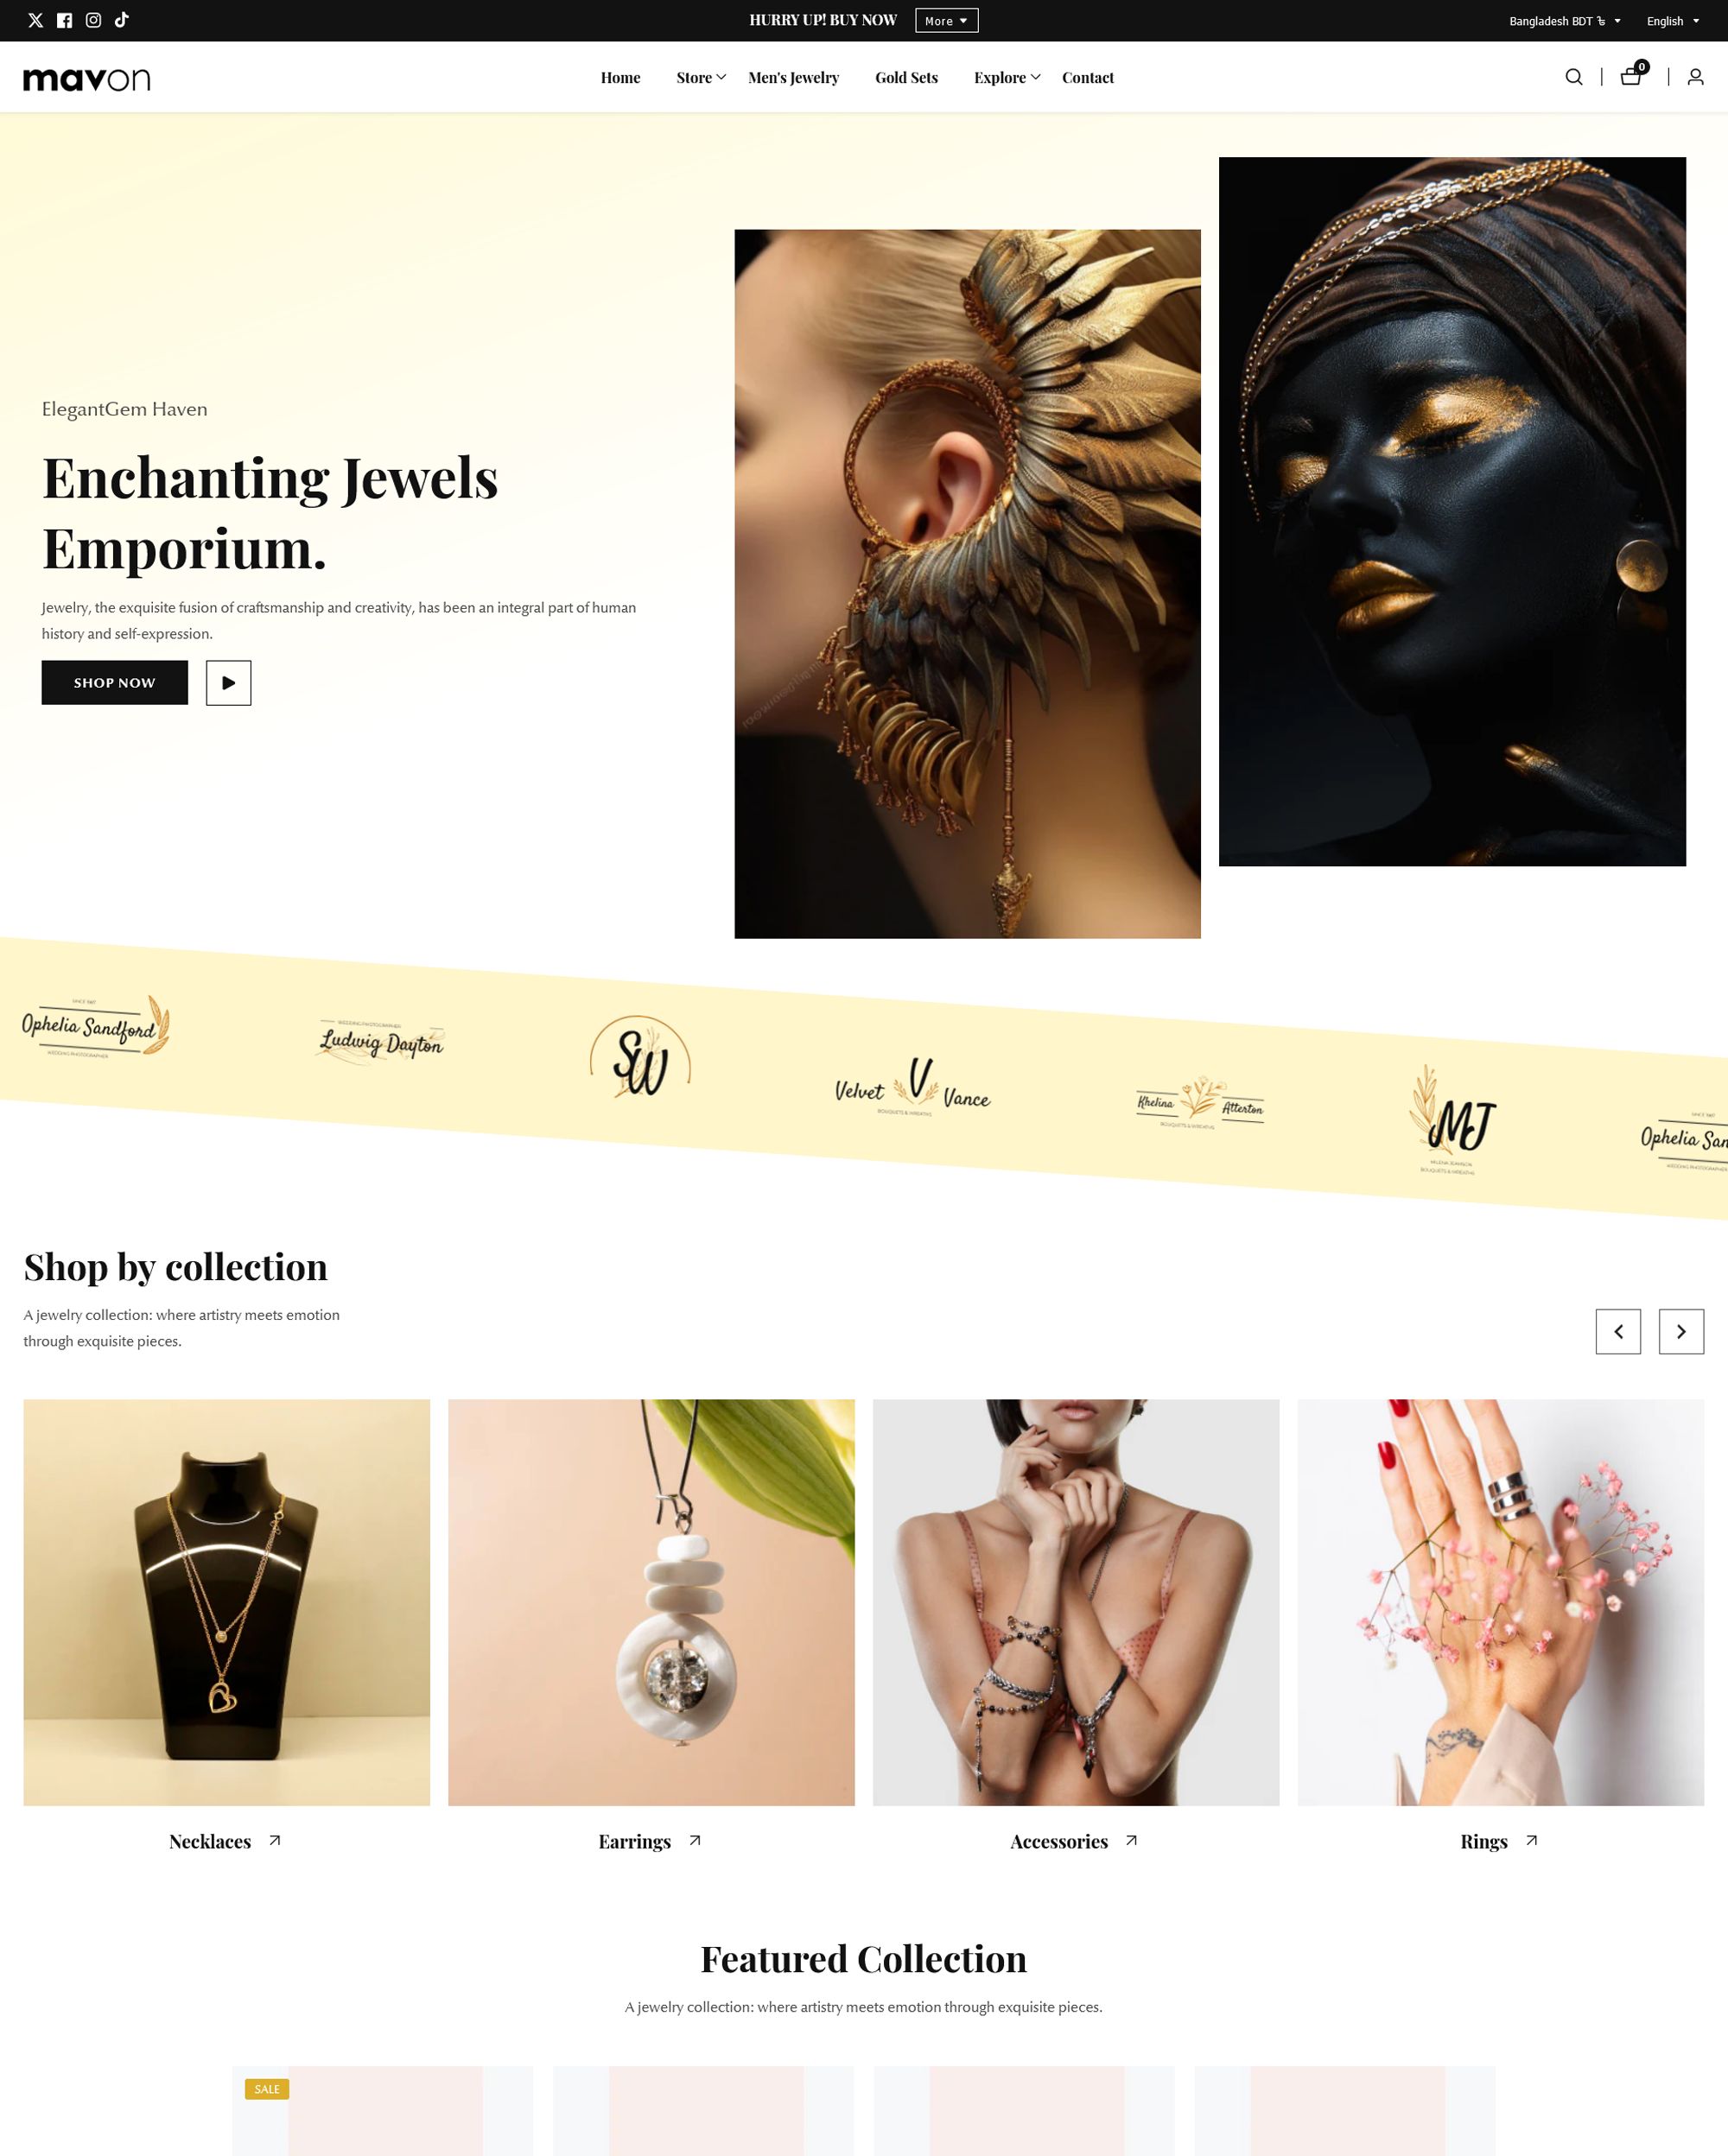 Anteprima in versione desktop del tema Mavon nello stile “Jewelry”